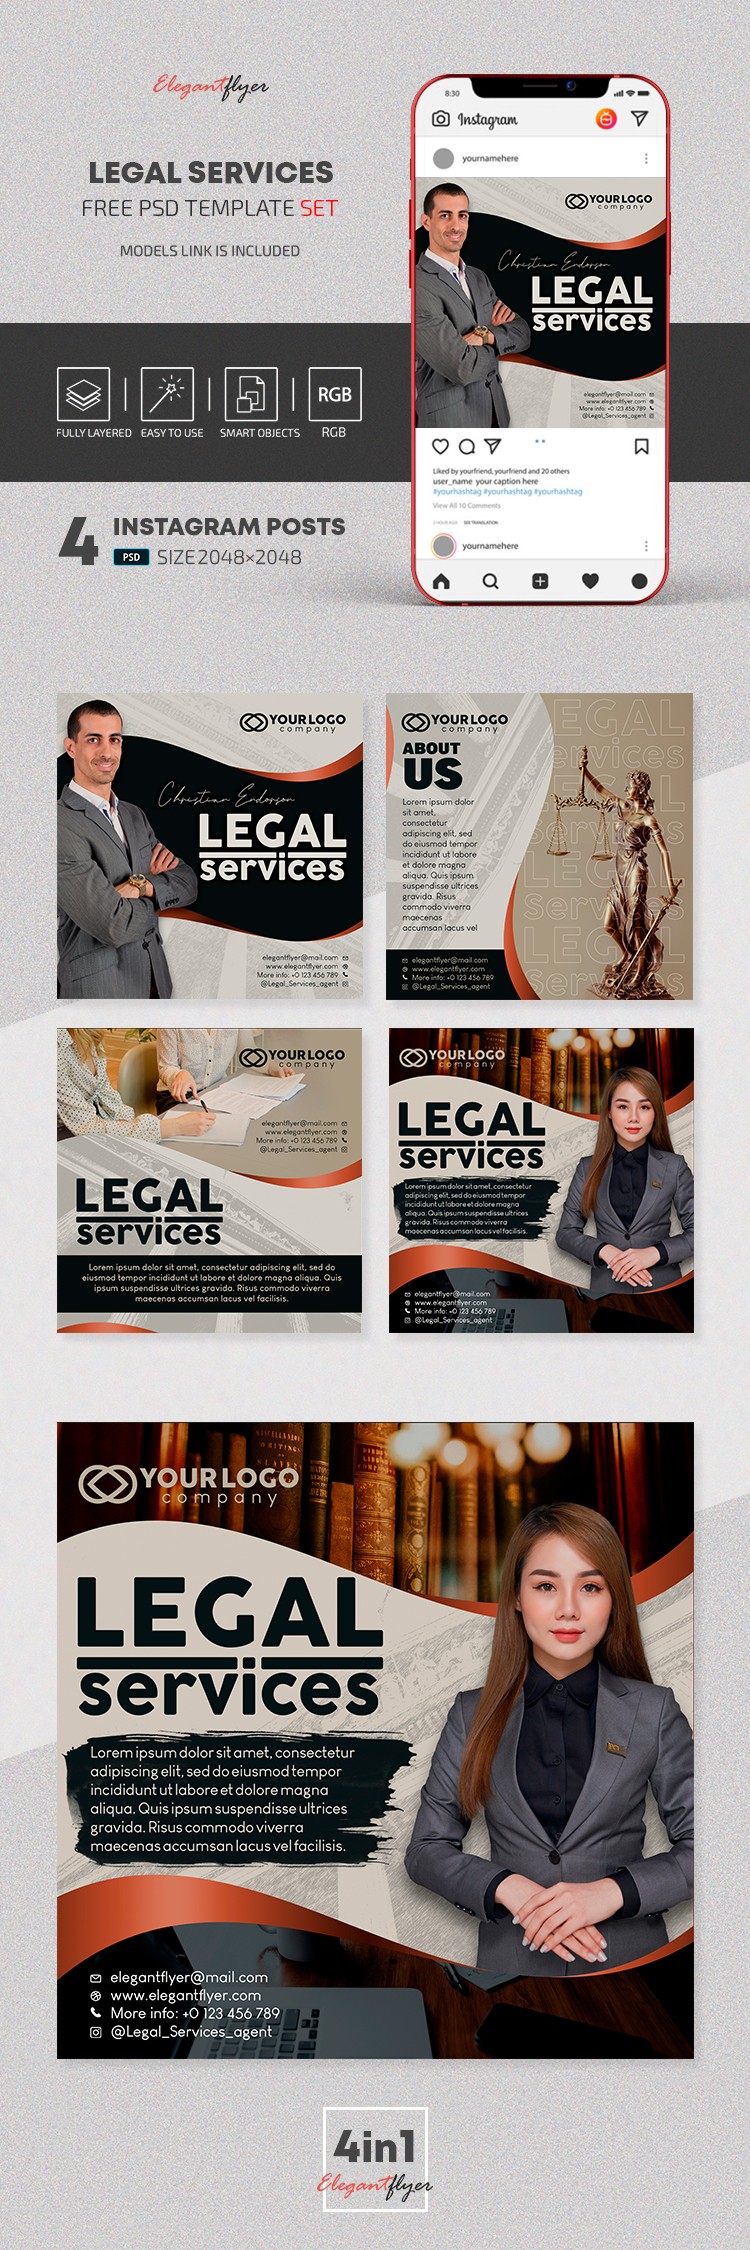 Gesetzliche Dienstleistungen auf Instagram by ElegantFlyer